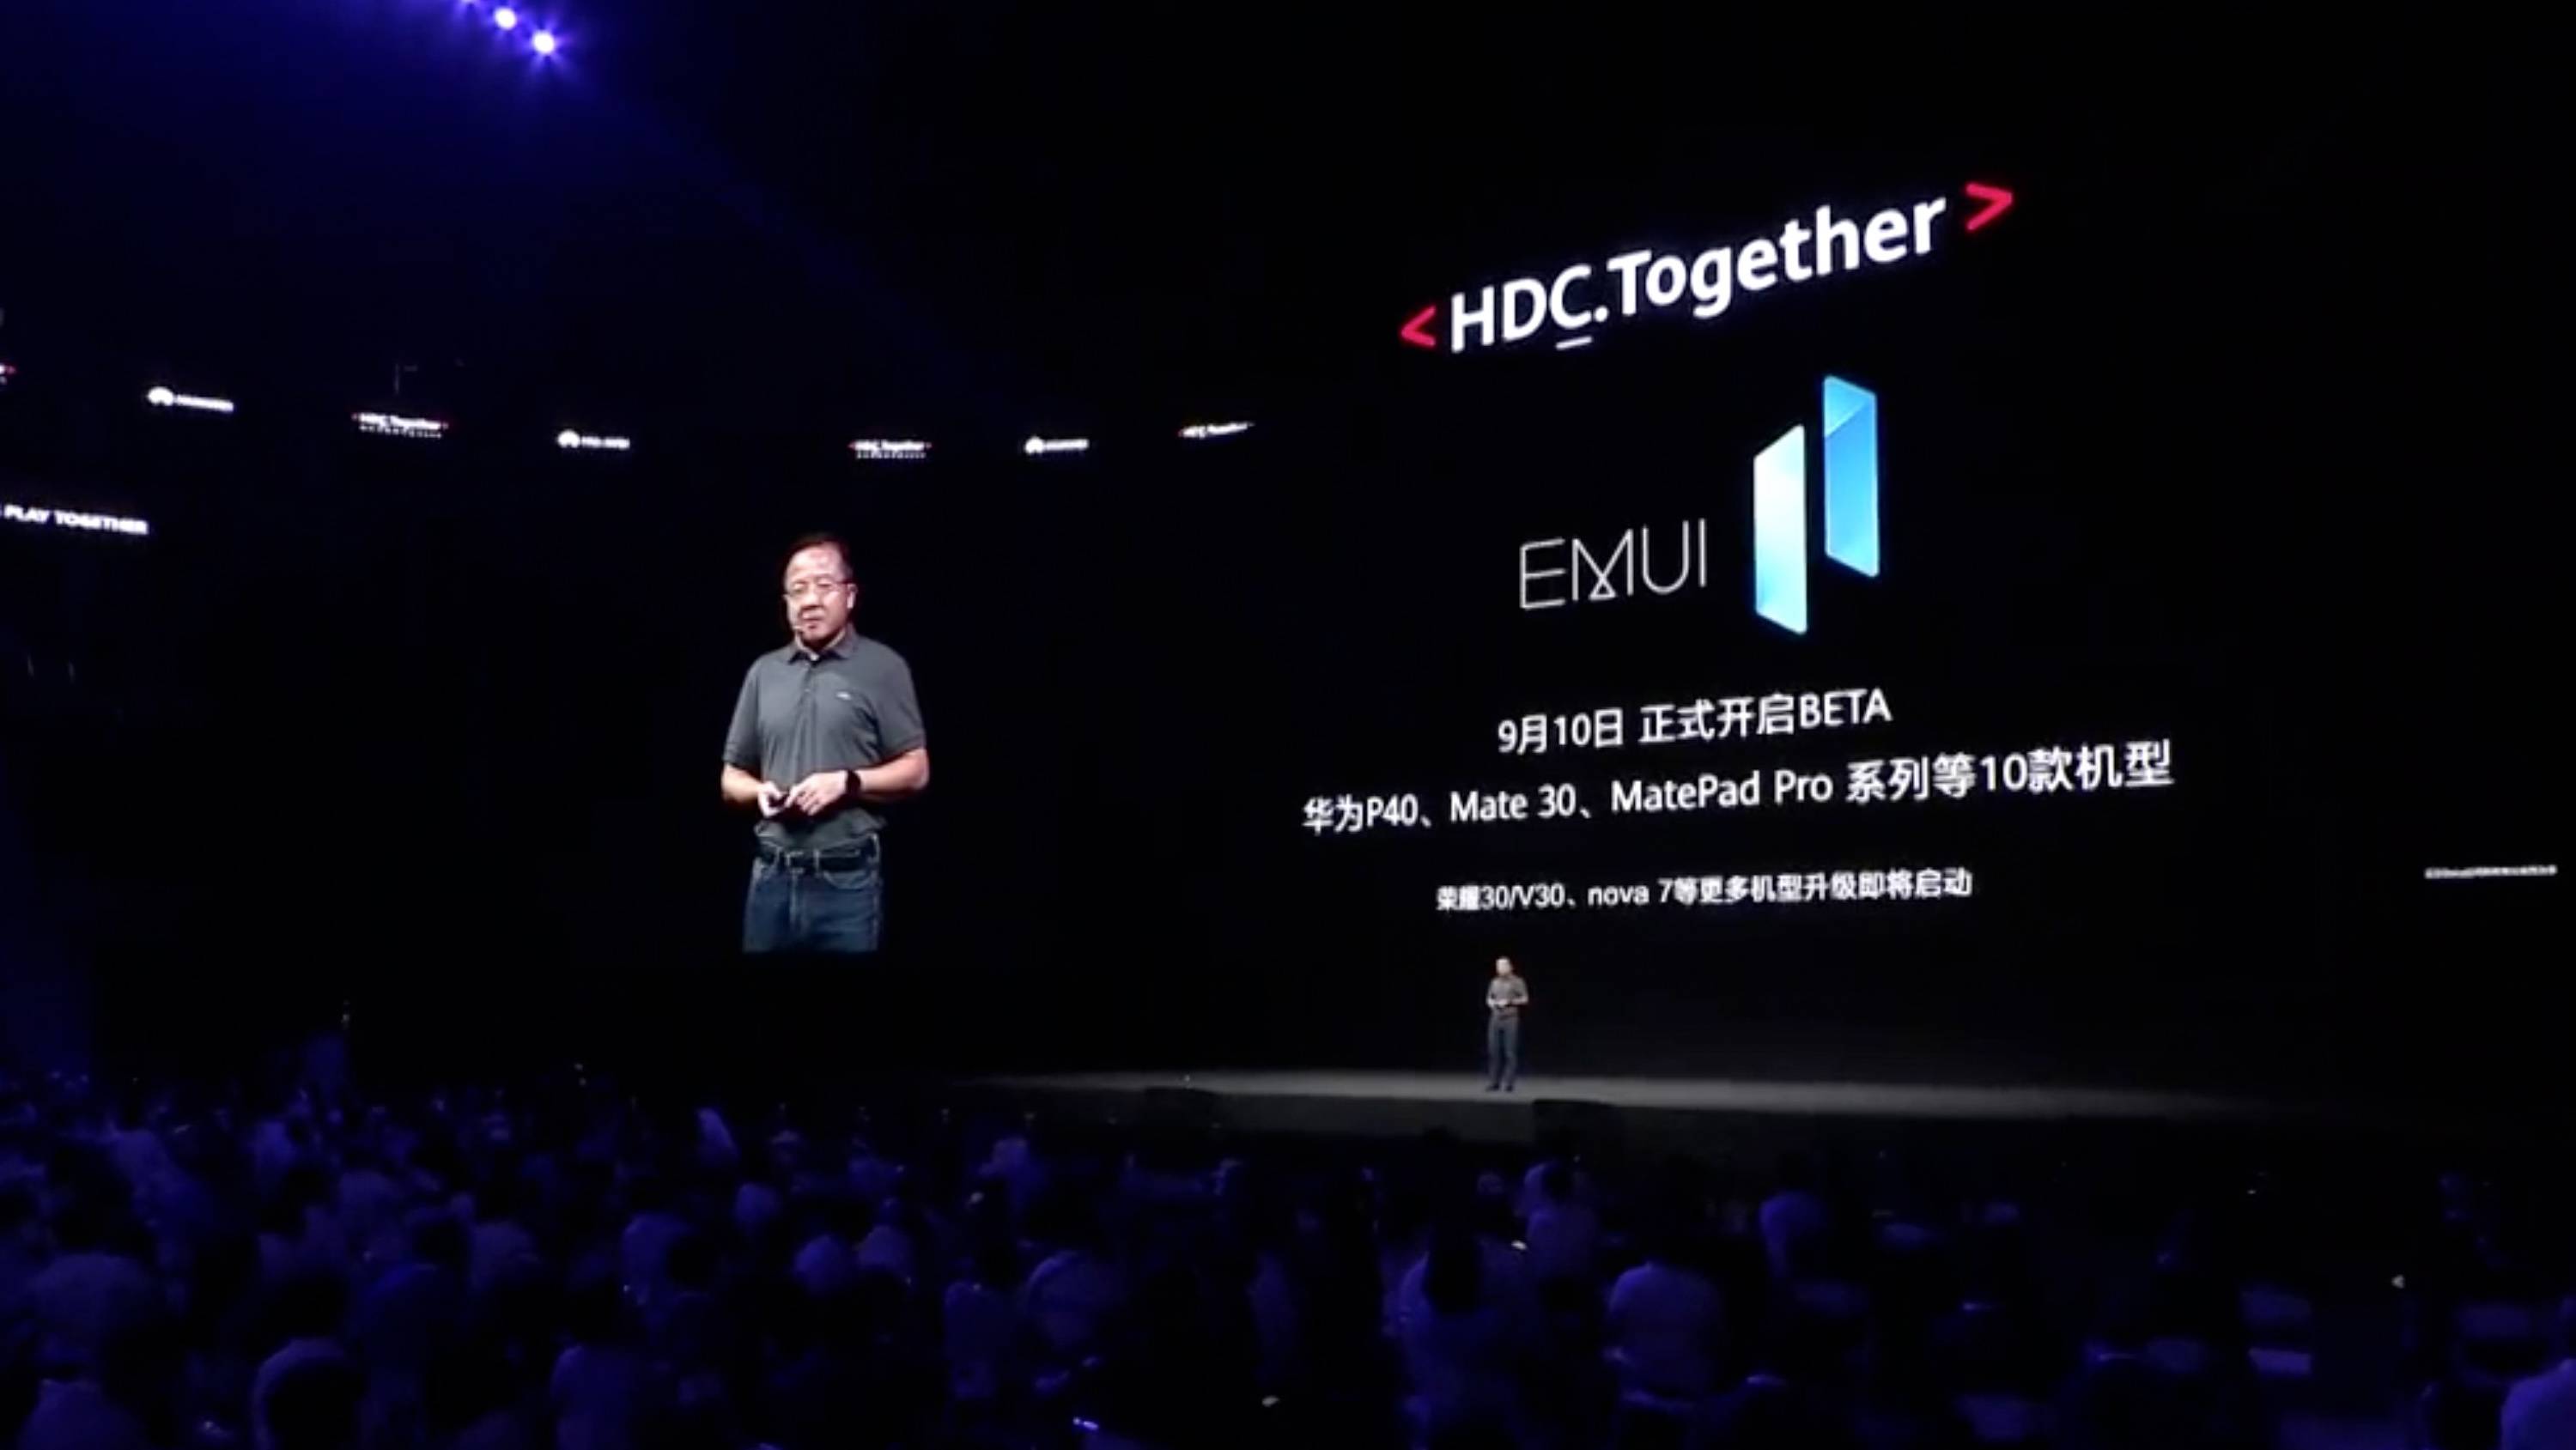 HDC EMUI 11 PPT 20 - Huawei Hongmeng 2.0 è qui! Se non esegui un secondo Android, sarai sul tuo telefono entro la fine dell’anno